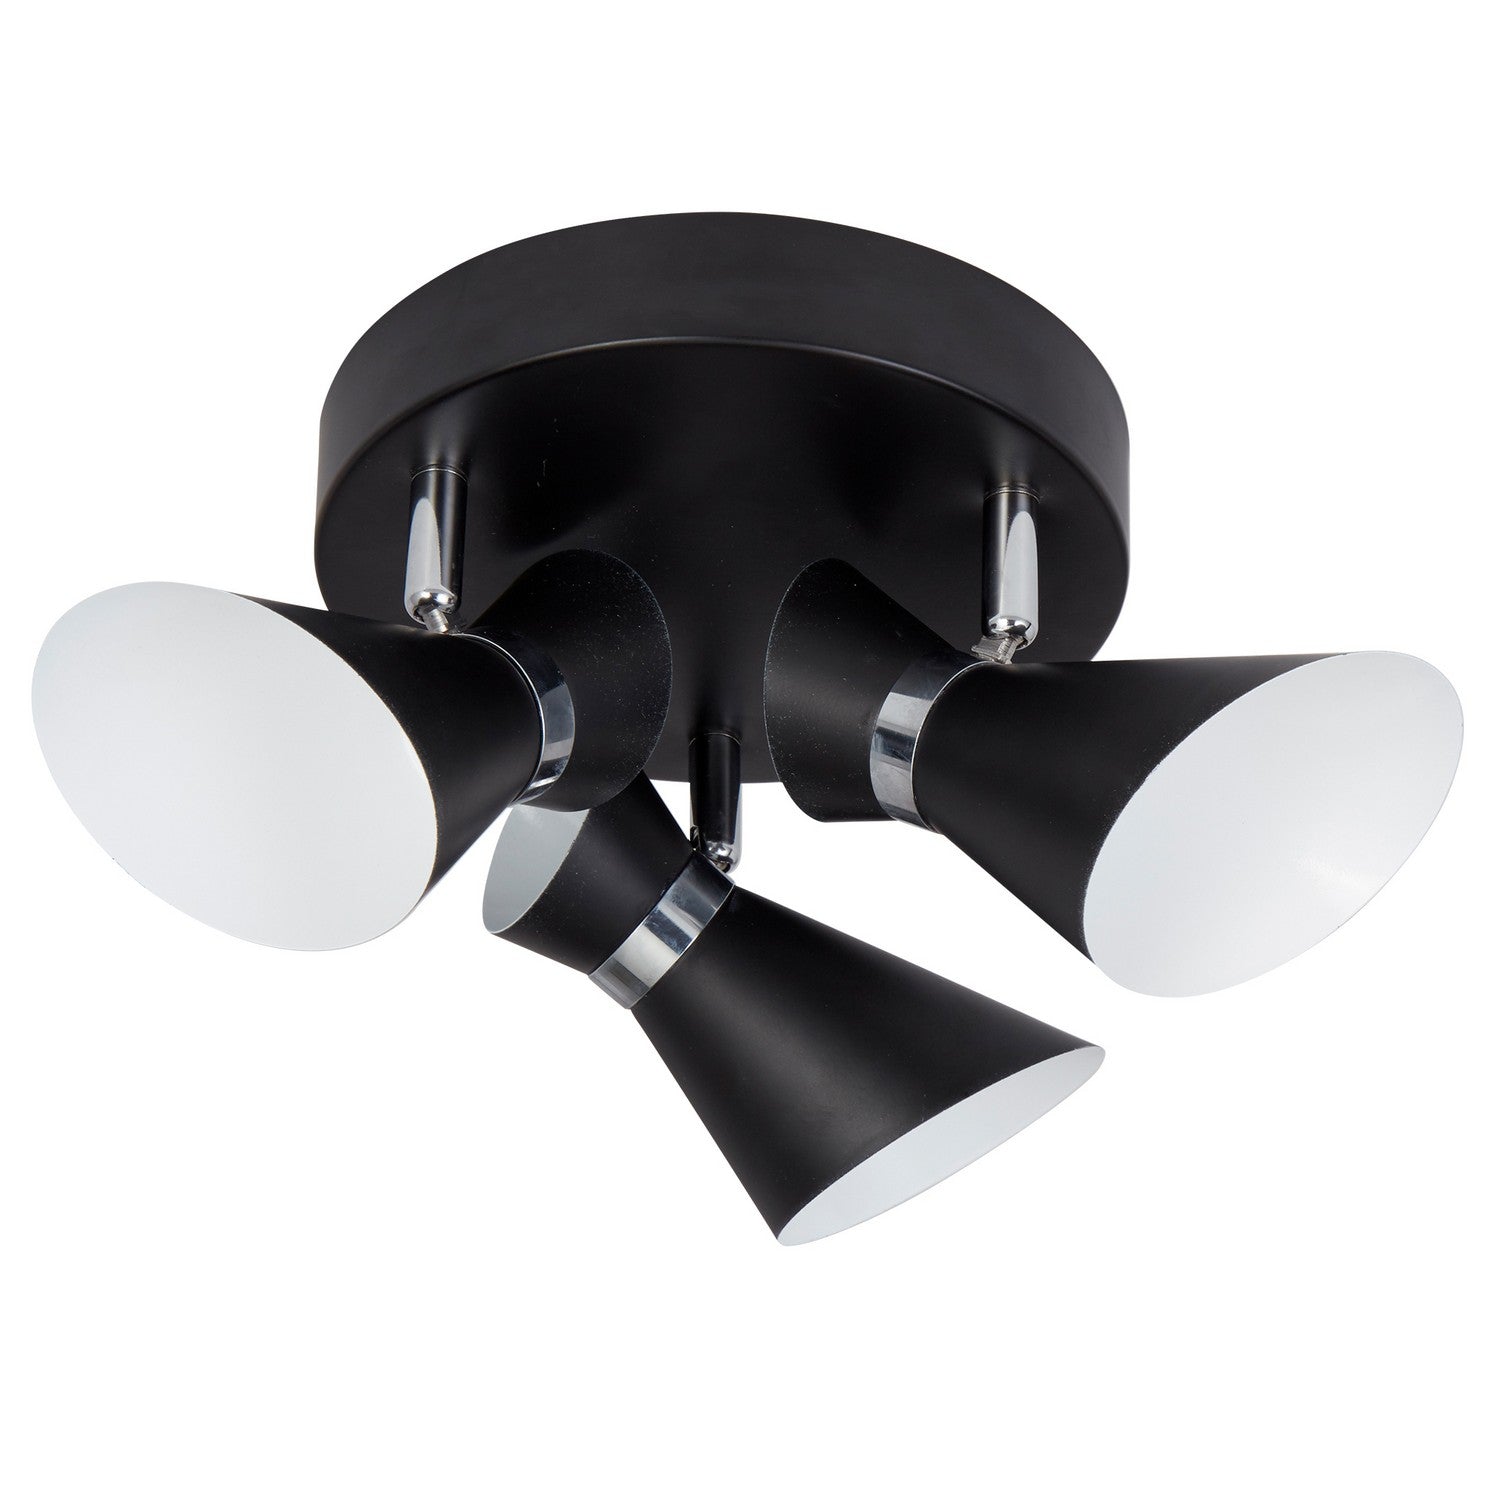 Diablo 3 Lights Matt Black/White Adjustable Head Ceiling Spotlight - Bonnypack